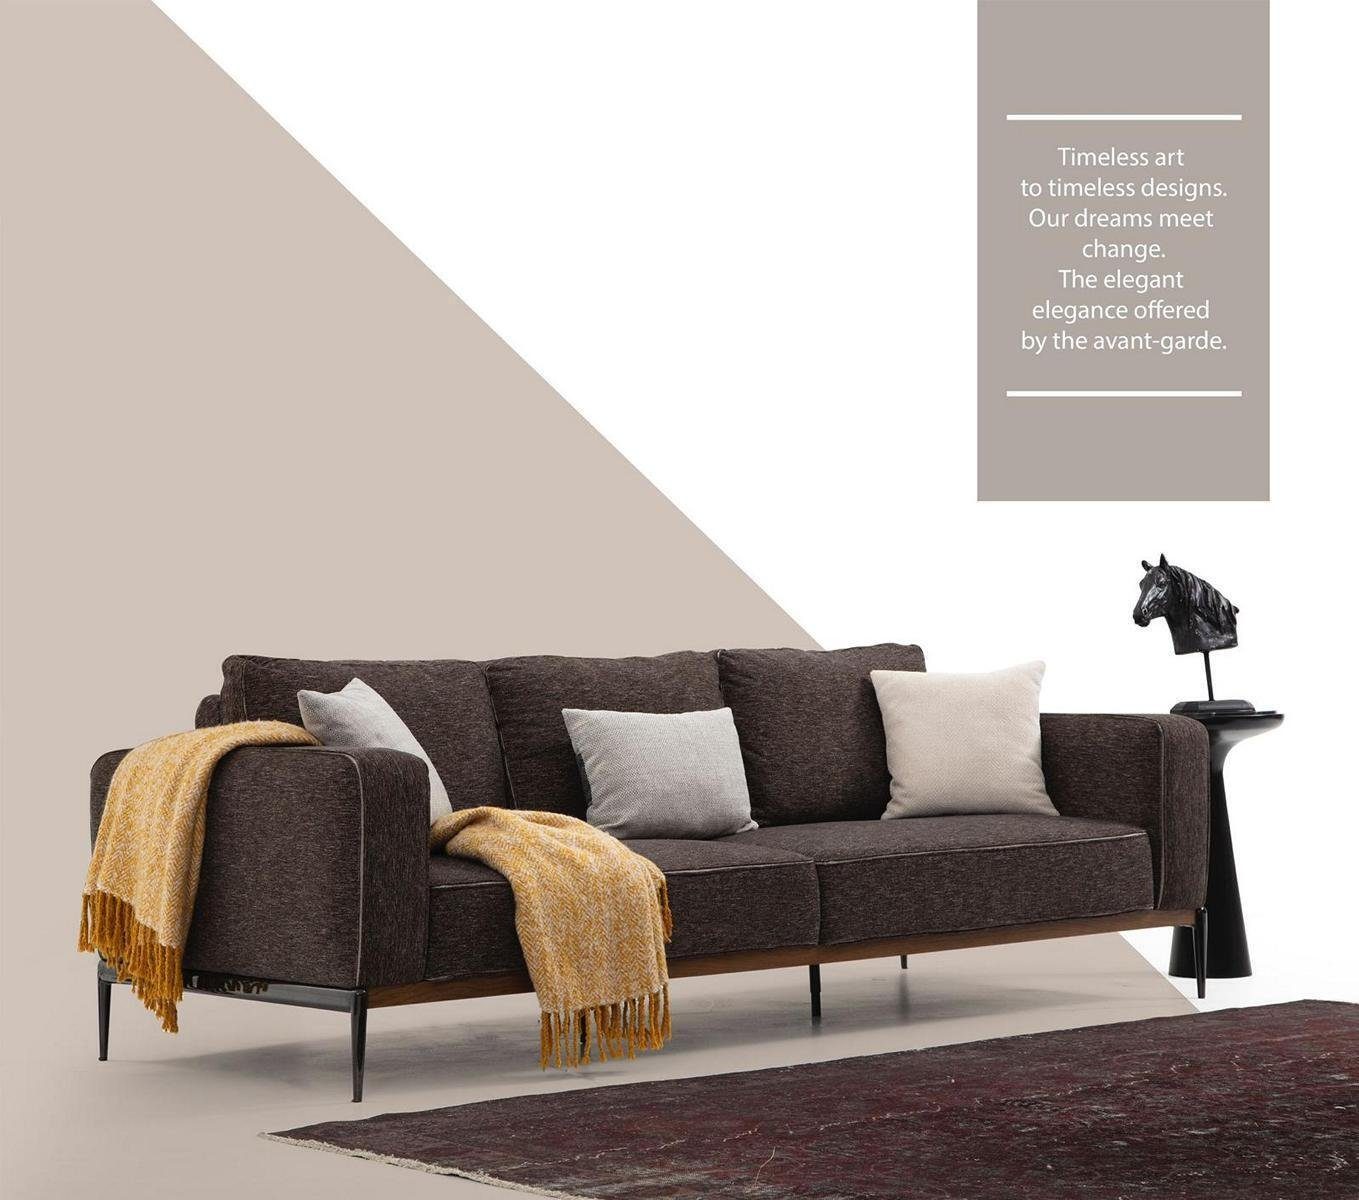 JVmoebel 4-Sitzer Viersitzer Sofa 4 Sitzer Stoff Sofas Modern Design Wohnzimmer Grau, 1 Teile, Made in Europa